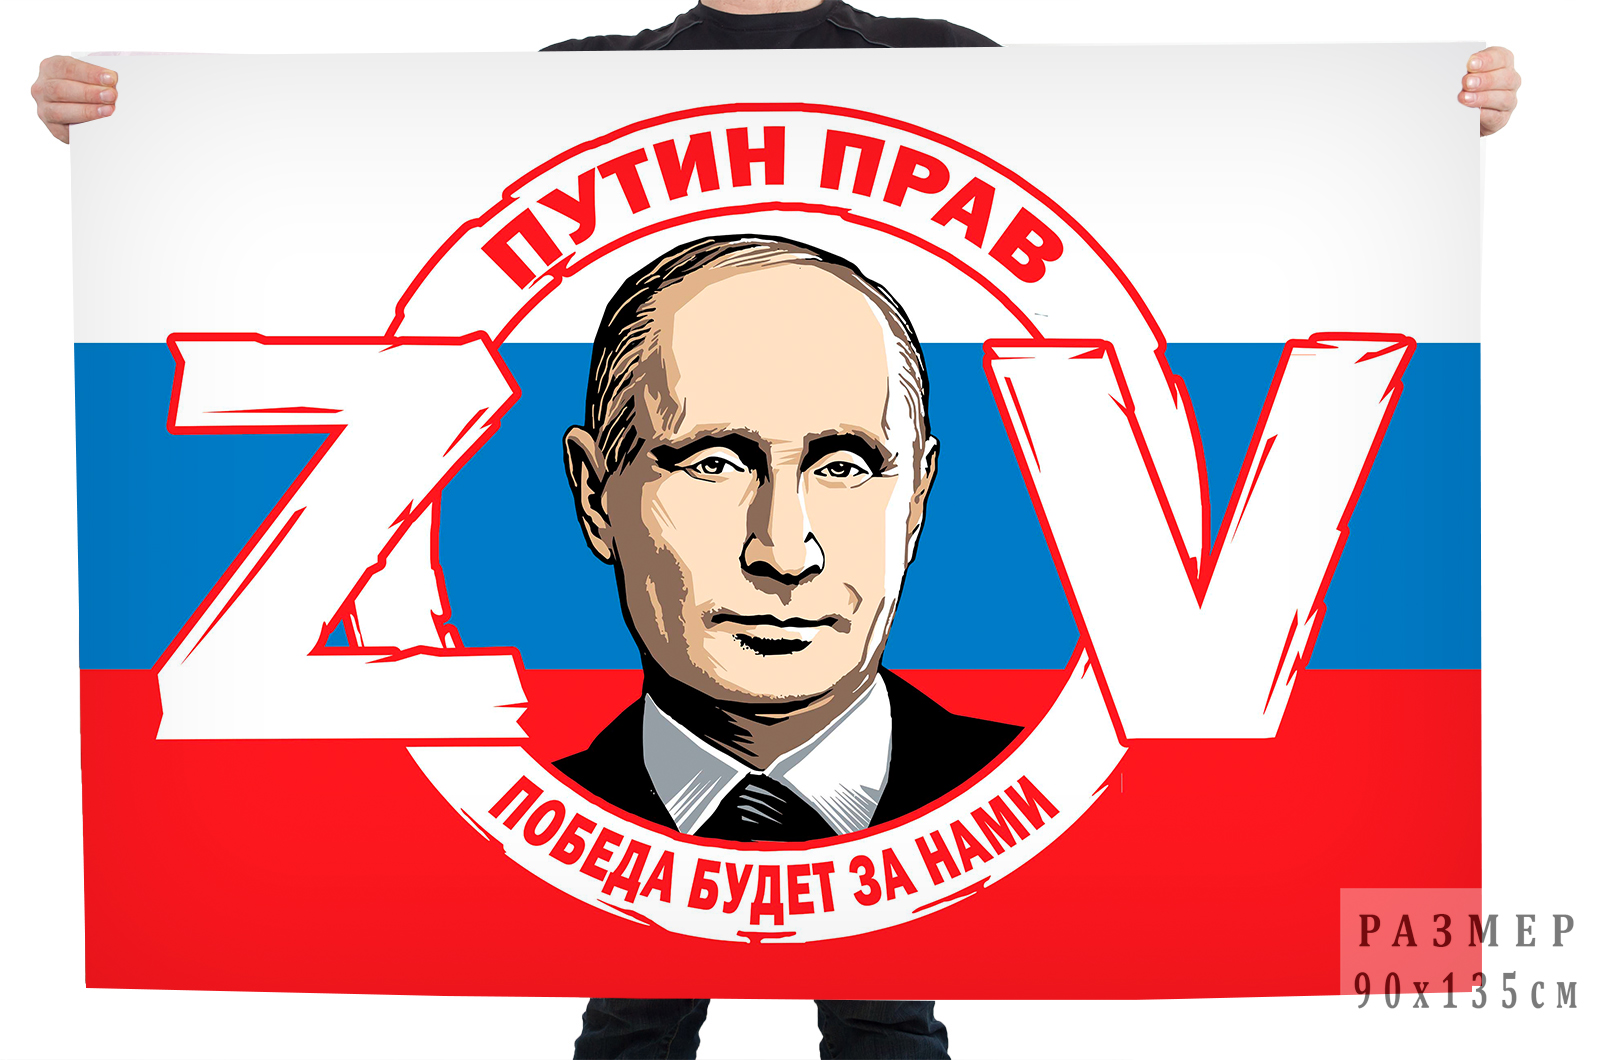 Флаг Российской Федерации ZOV "Путин прав победа будет за нами"